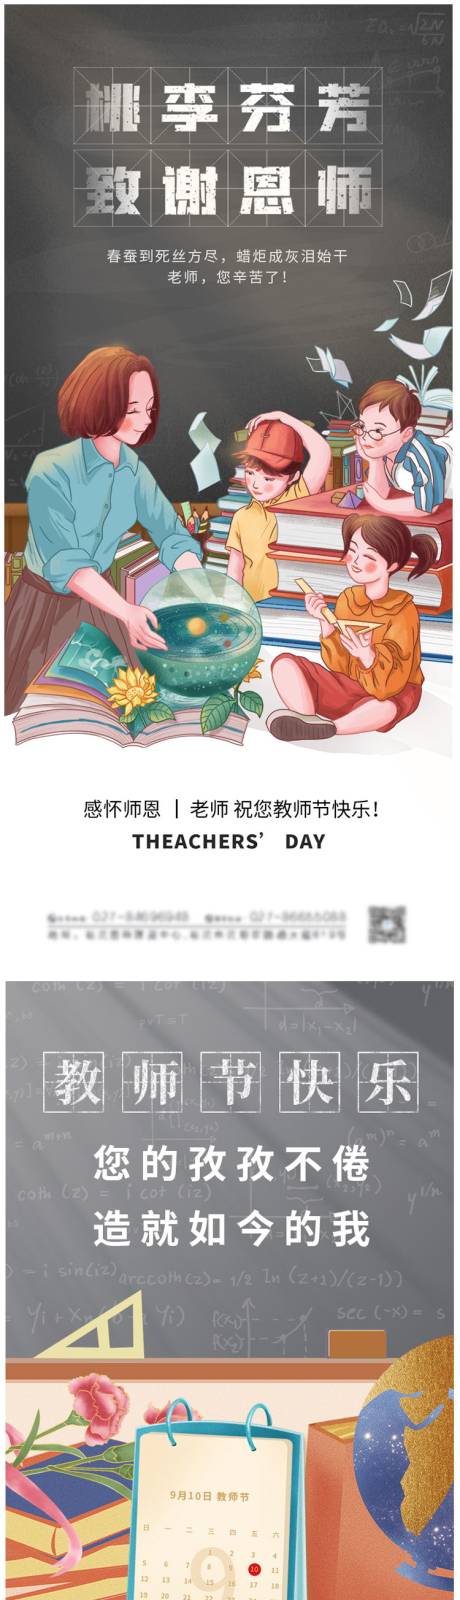 教师节系列海报